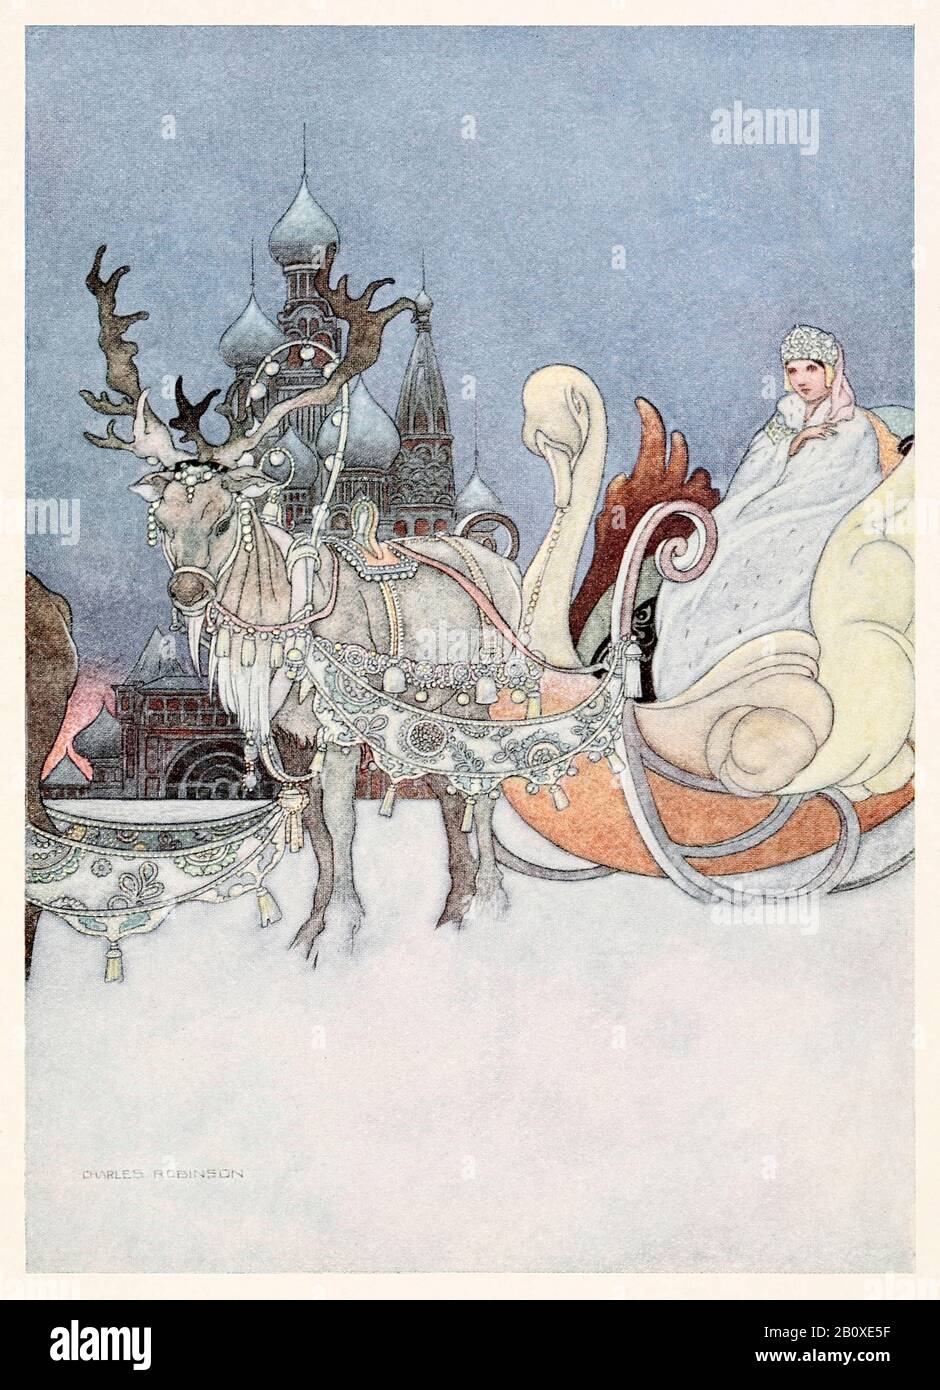 « la princesse russe » du « Remarquable Rocket » du Prince Heureux et Des Autres Tales d'Oscar Wilde (1854-1900) illustré par Charles Robinson (1870-1937). Voir plus d'informations ci-dessous. Banque D'Images